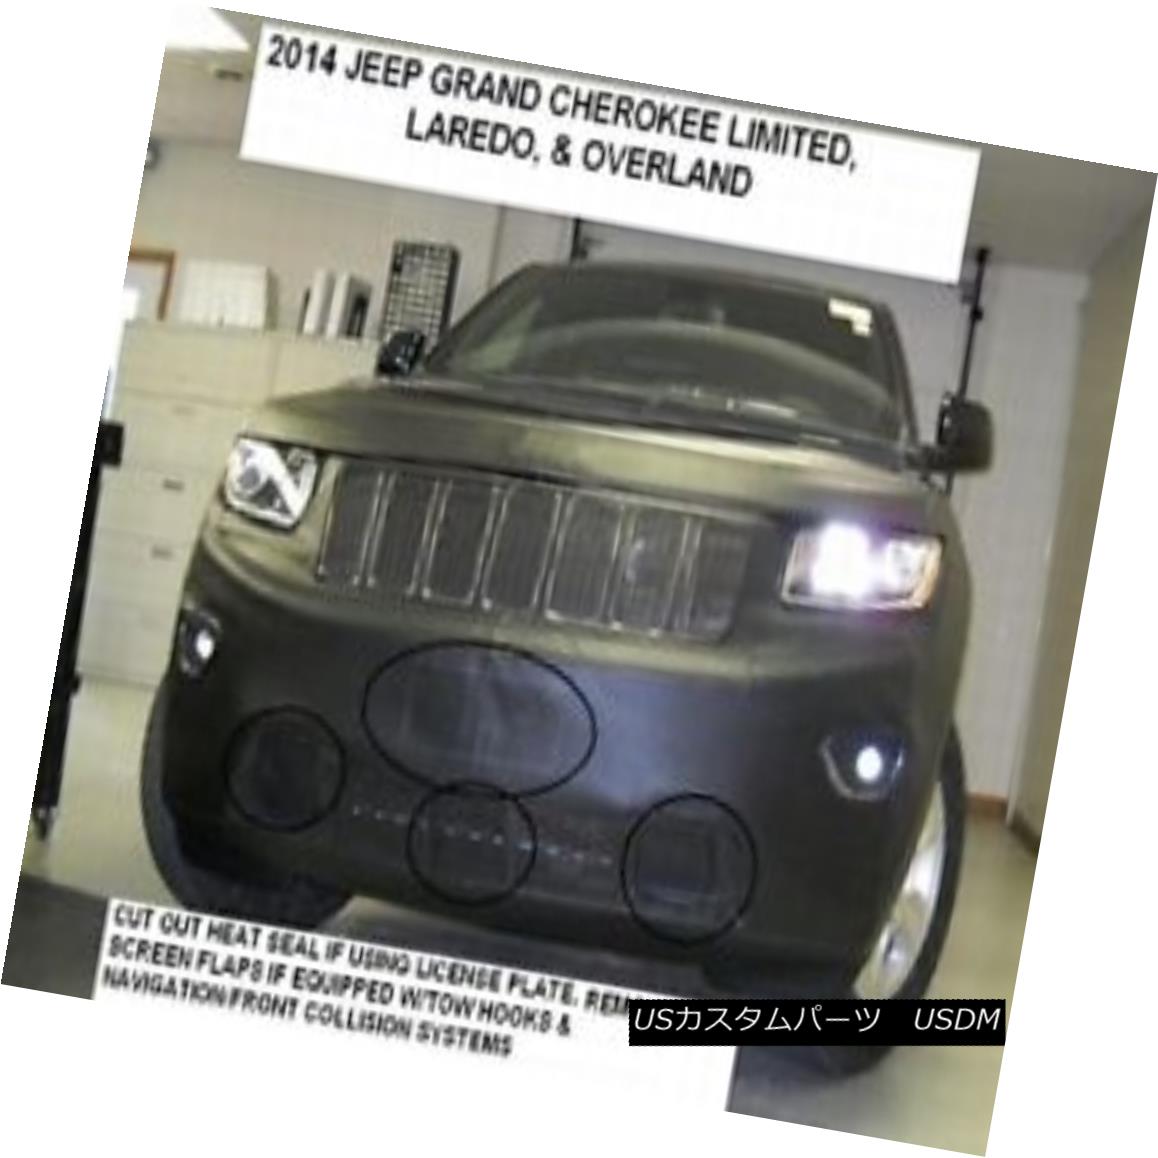 フルブラ ノーズブラ Lebra Front End Mask Cover Bra Fits Jeep Grand Cherokee Lorado & Limited 14-16 LebraフロントエンドマスクカバーブラはJeep Grand Cherokee Laredoにフィットします。 限定14-16画像